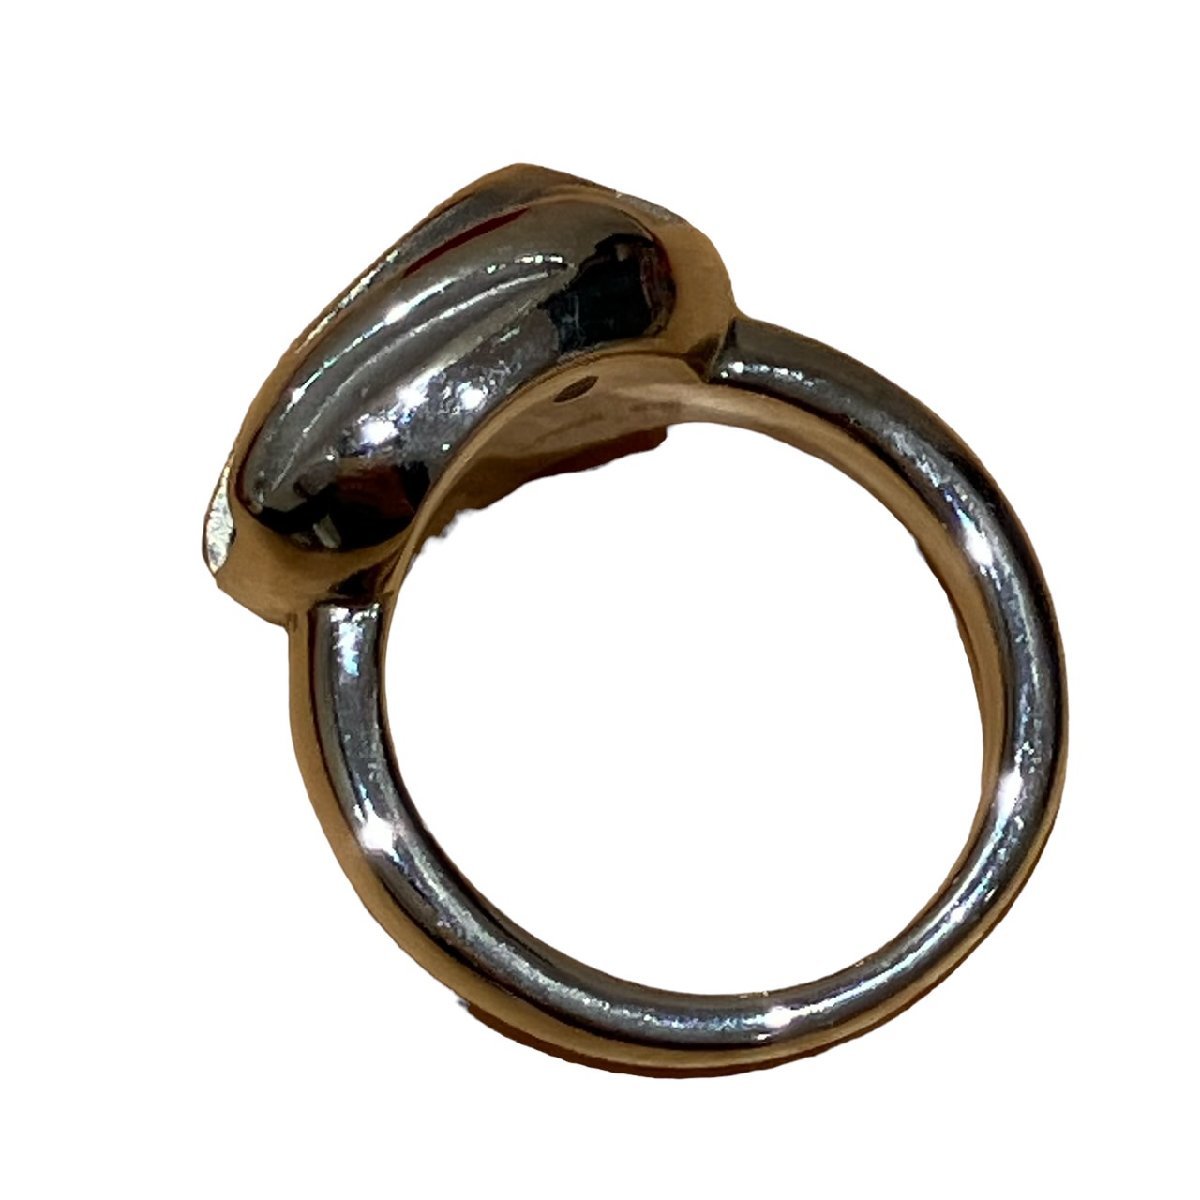  дизель Logo нержавеющая сталь кольцо кольцо 5.5 оттенок серебра аксессуары 